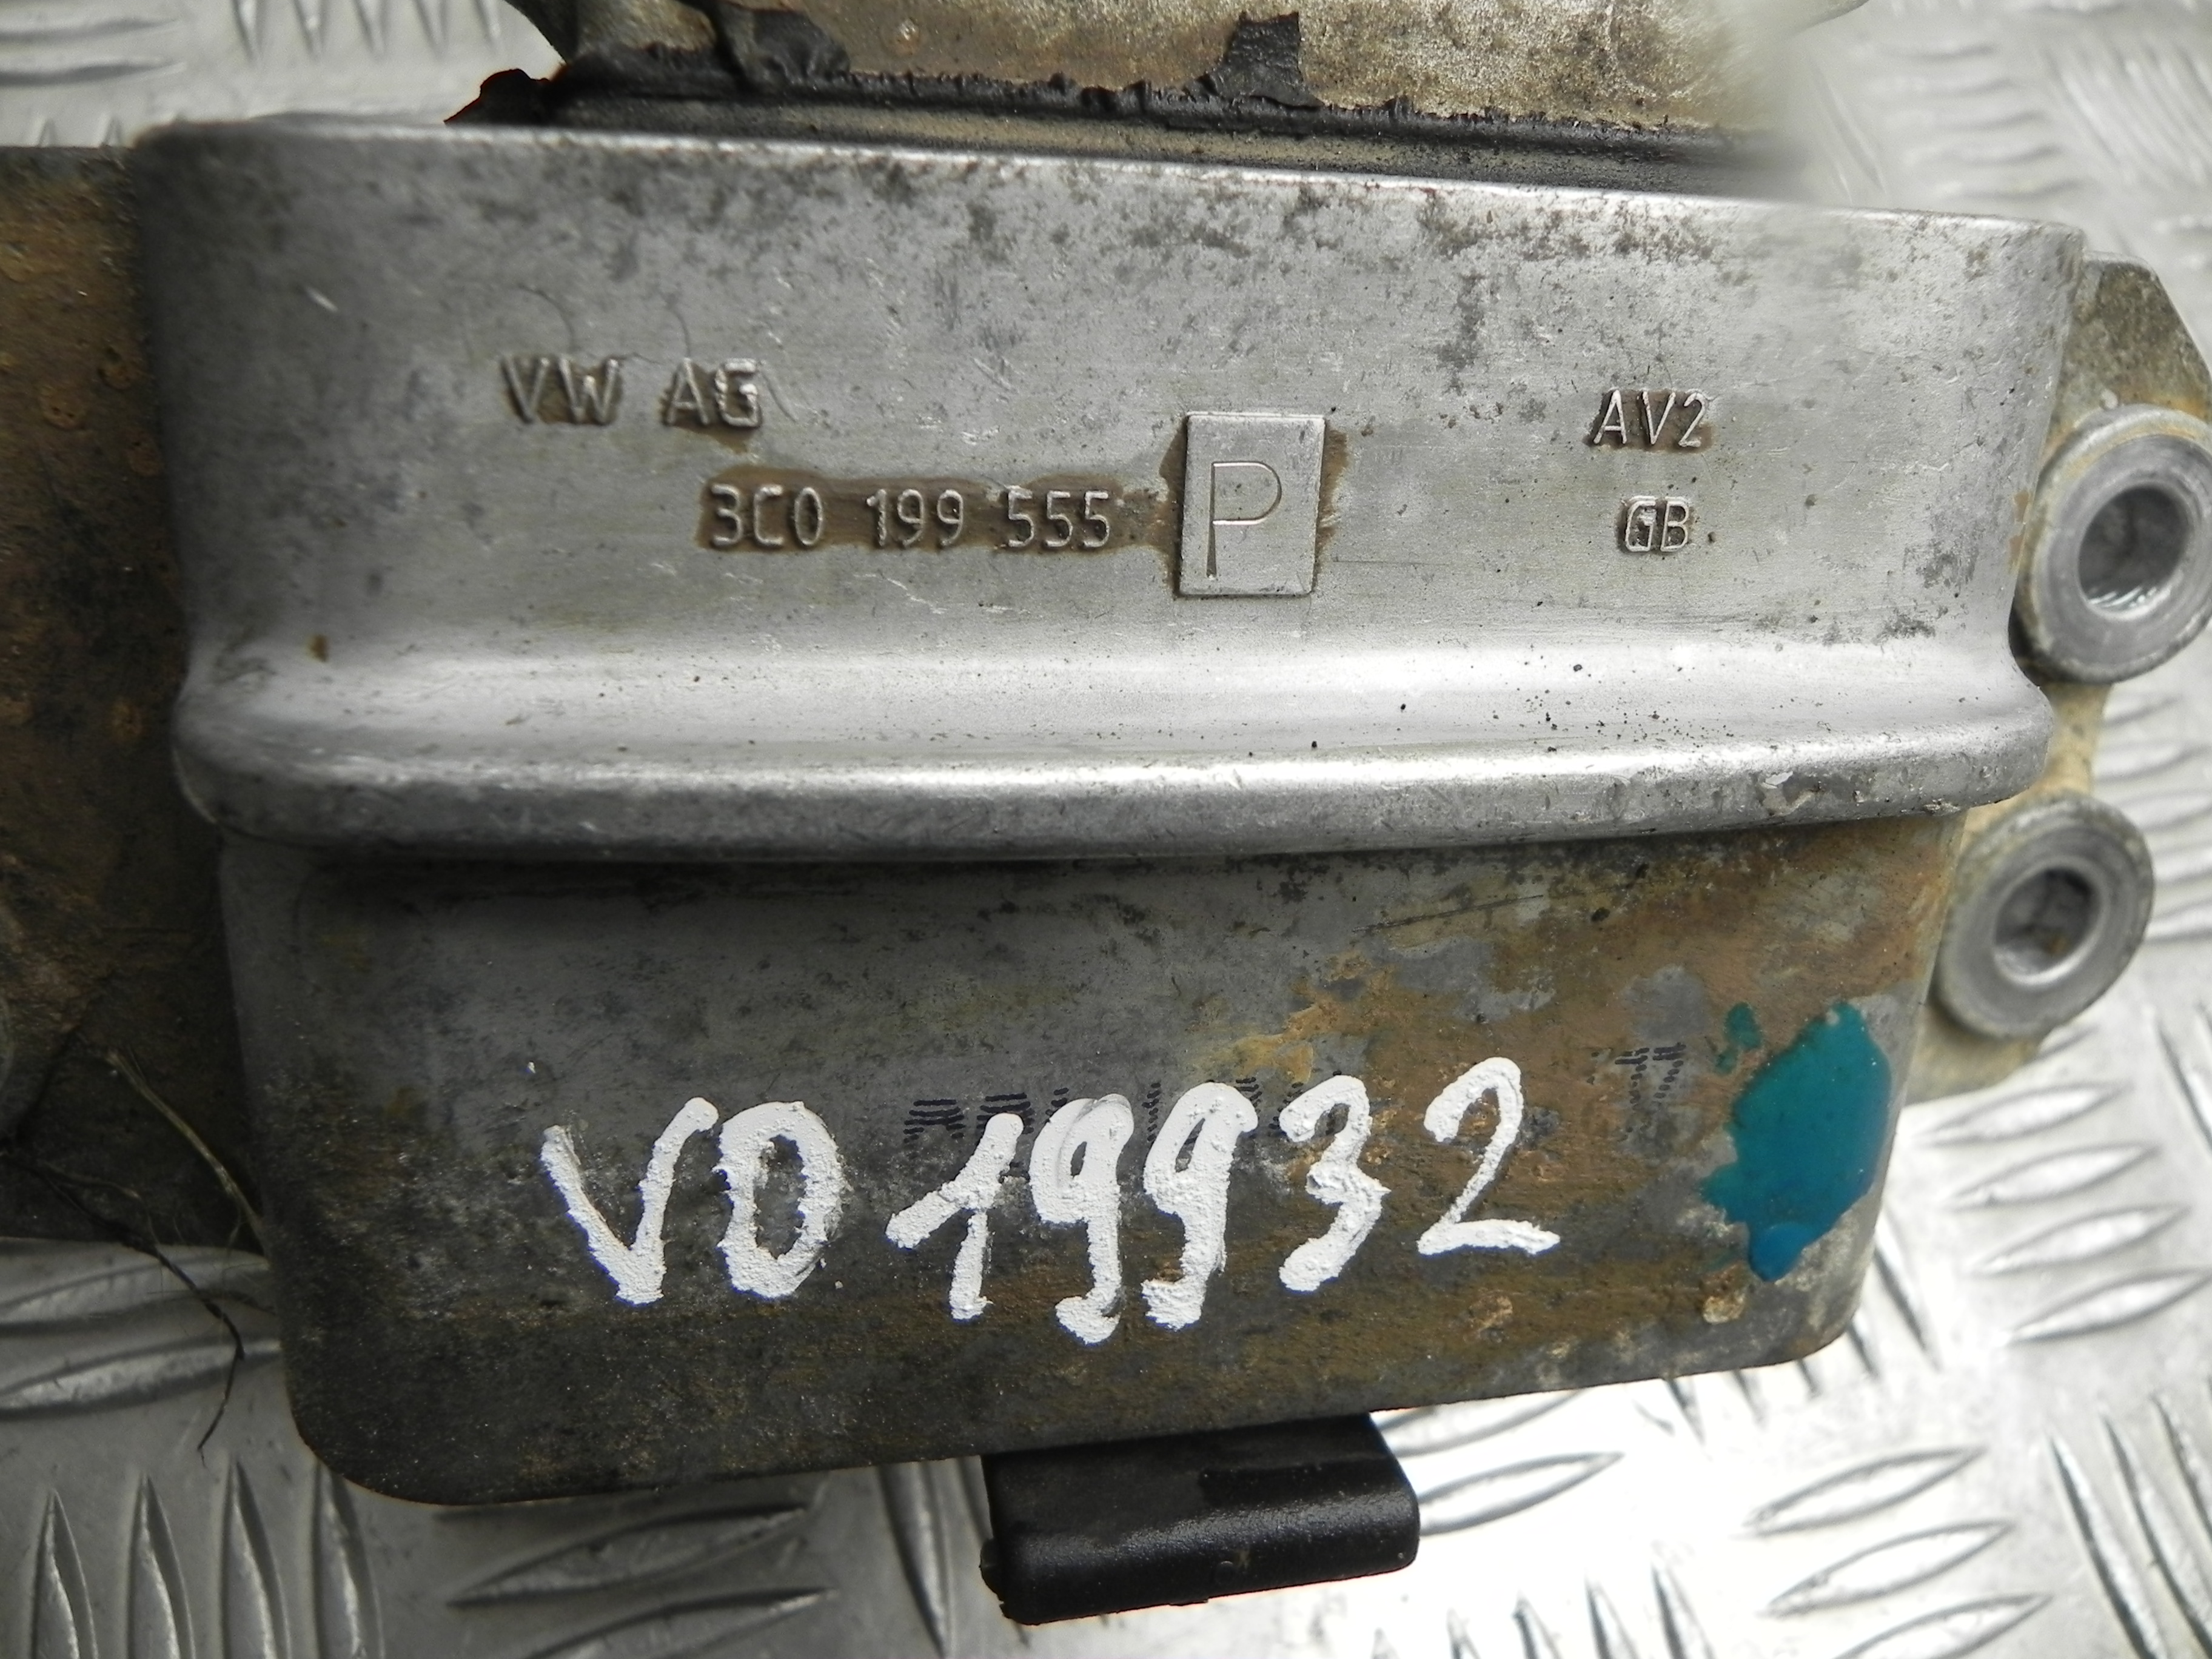 VOLKSWAGEN Passat B7 (2010-2015) Другие части внутренние двигателя 3C0199555P 23441695